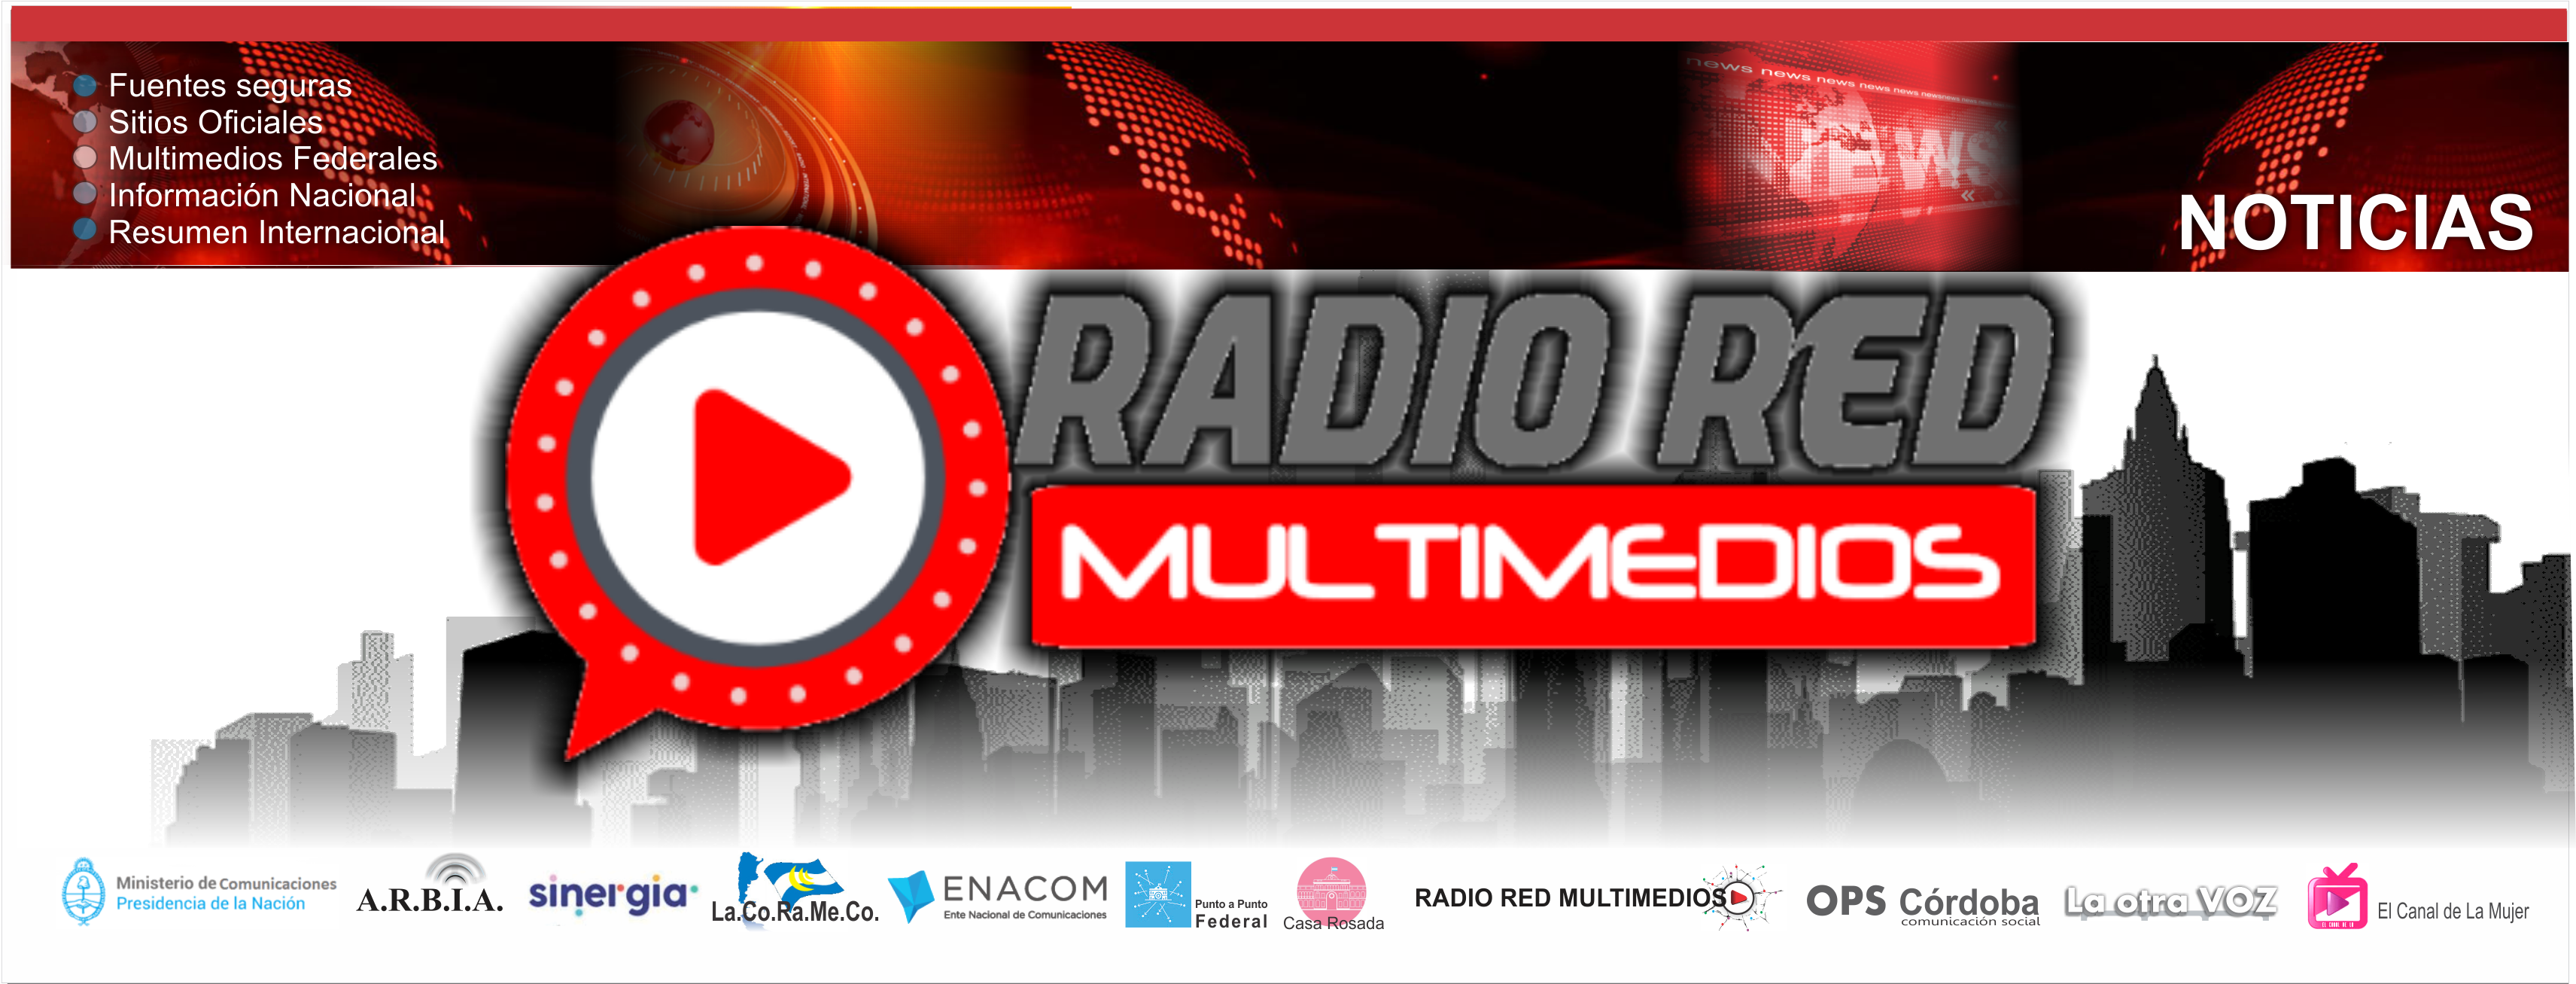 Radio Red Multimedios